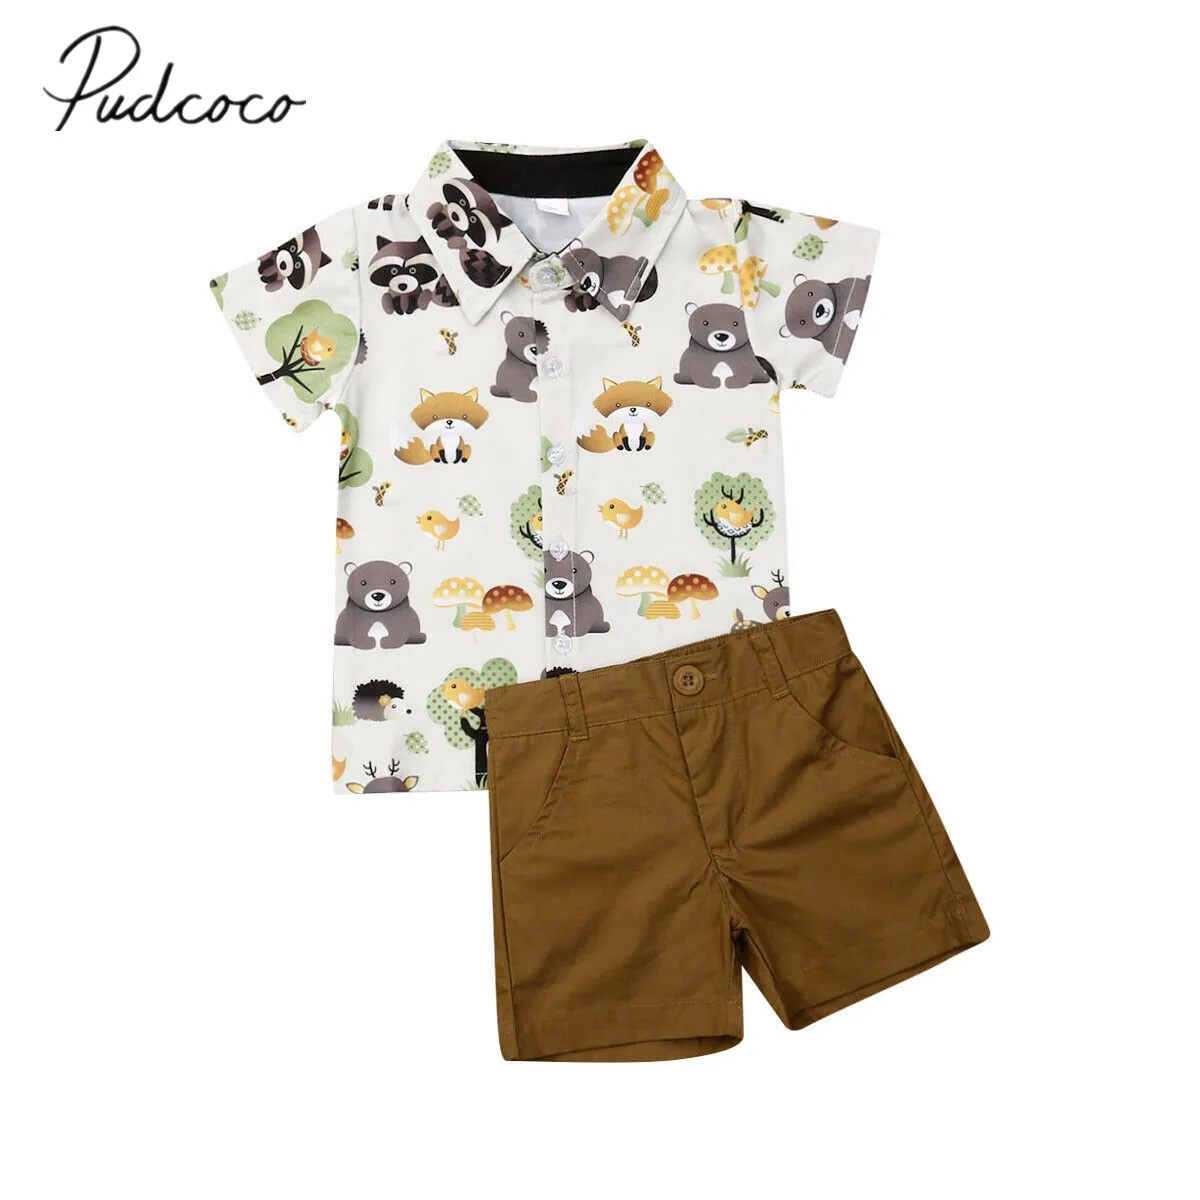 Г. Летняя одежда для малышей Одежда для маленьких джентльменов, рубашка Топы+ короткие штаны комплект одежды из 2 предметов с принтом животных, От 1 до 5 лет